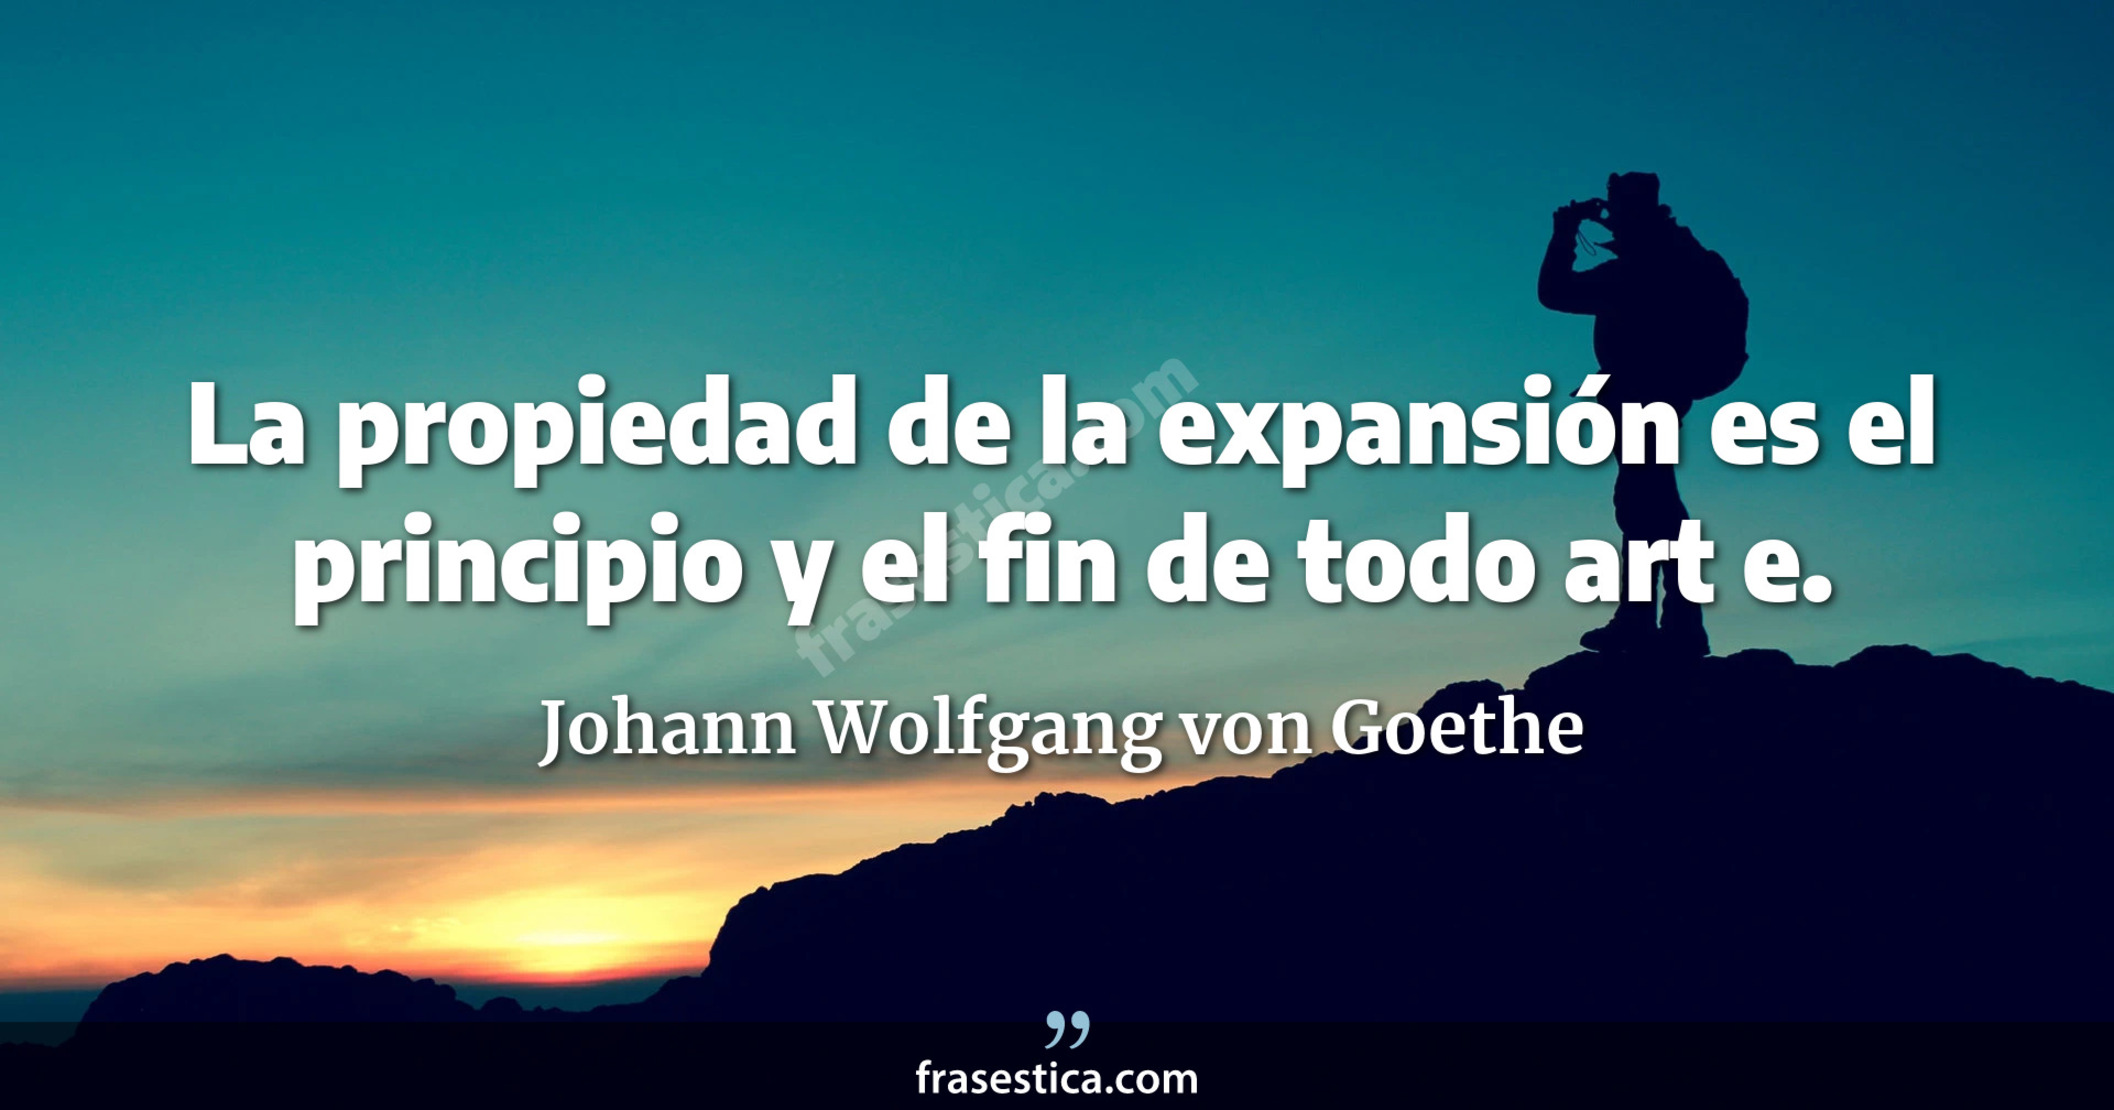 La propiedad de la expansión es el principio y el fin de todo art e. - Johann Wolfgang von Goethe